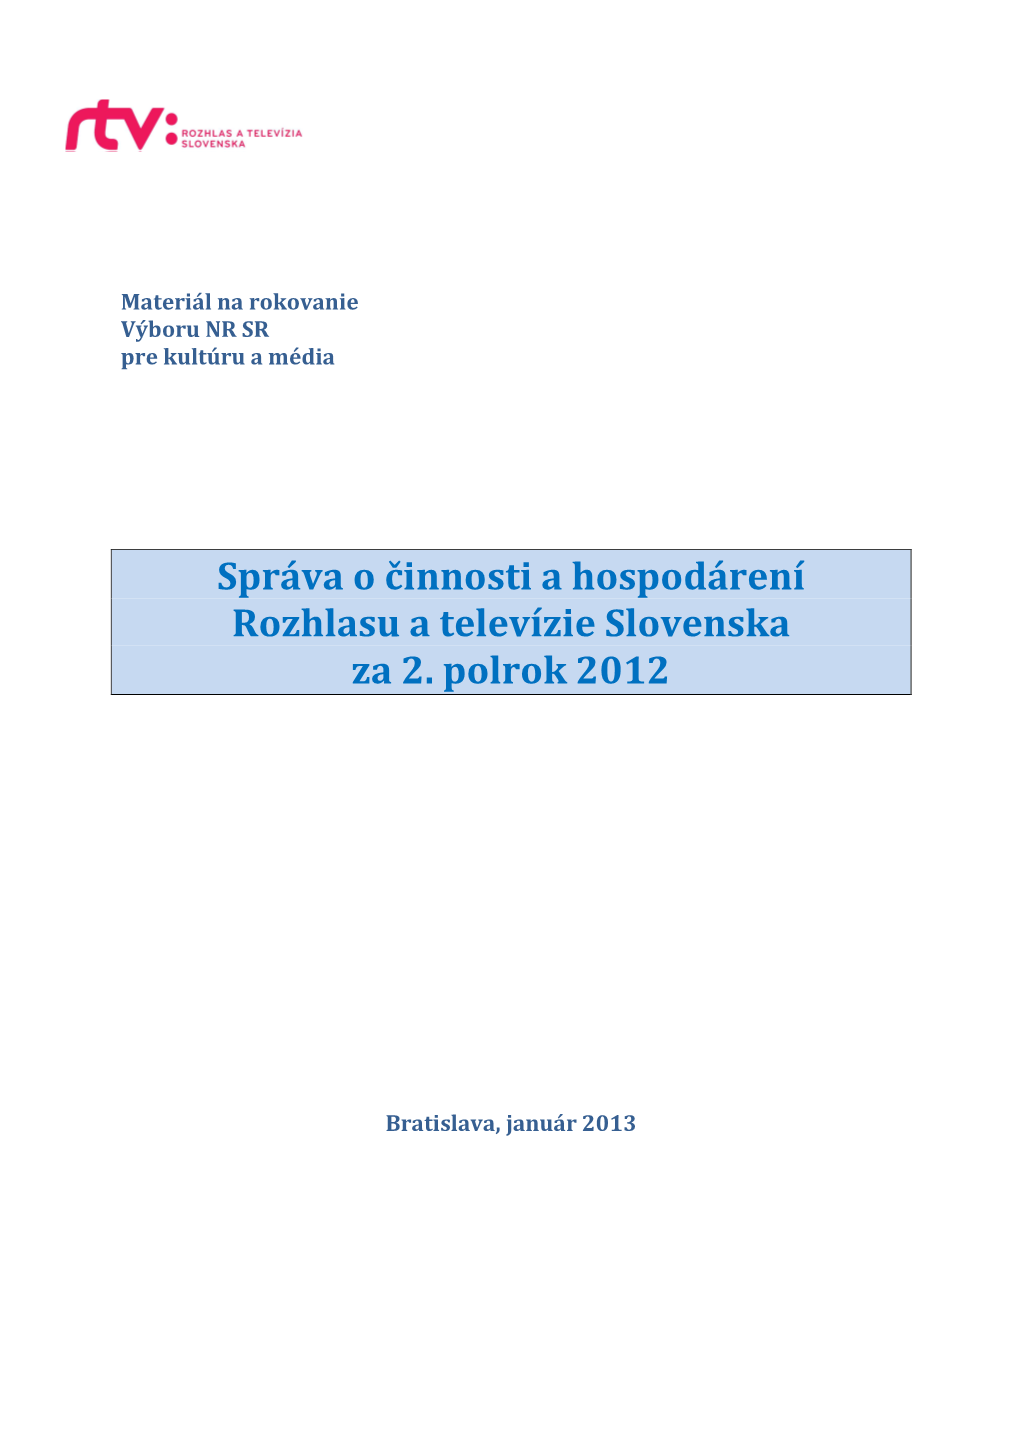 Správa O Činnosti a Hospodárení Rozhlasu a Televízie Slovenska Za 2. Polrok 2012